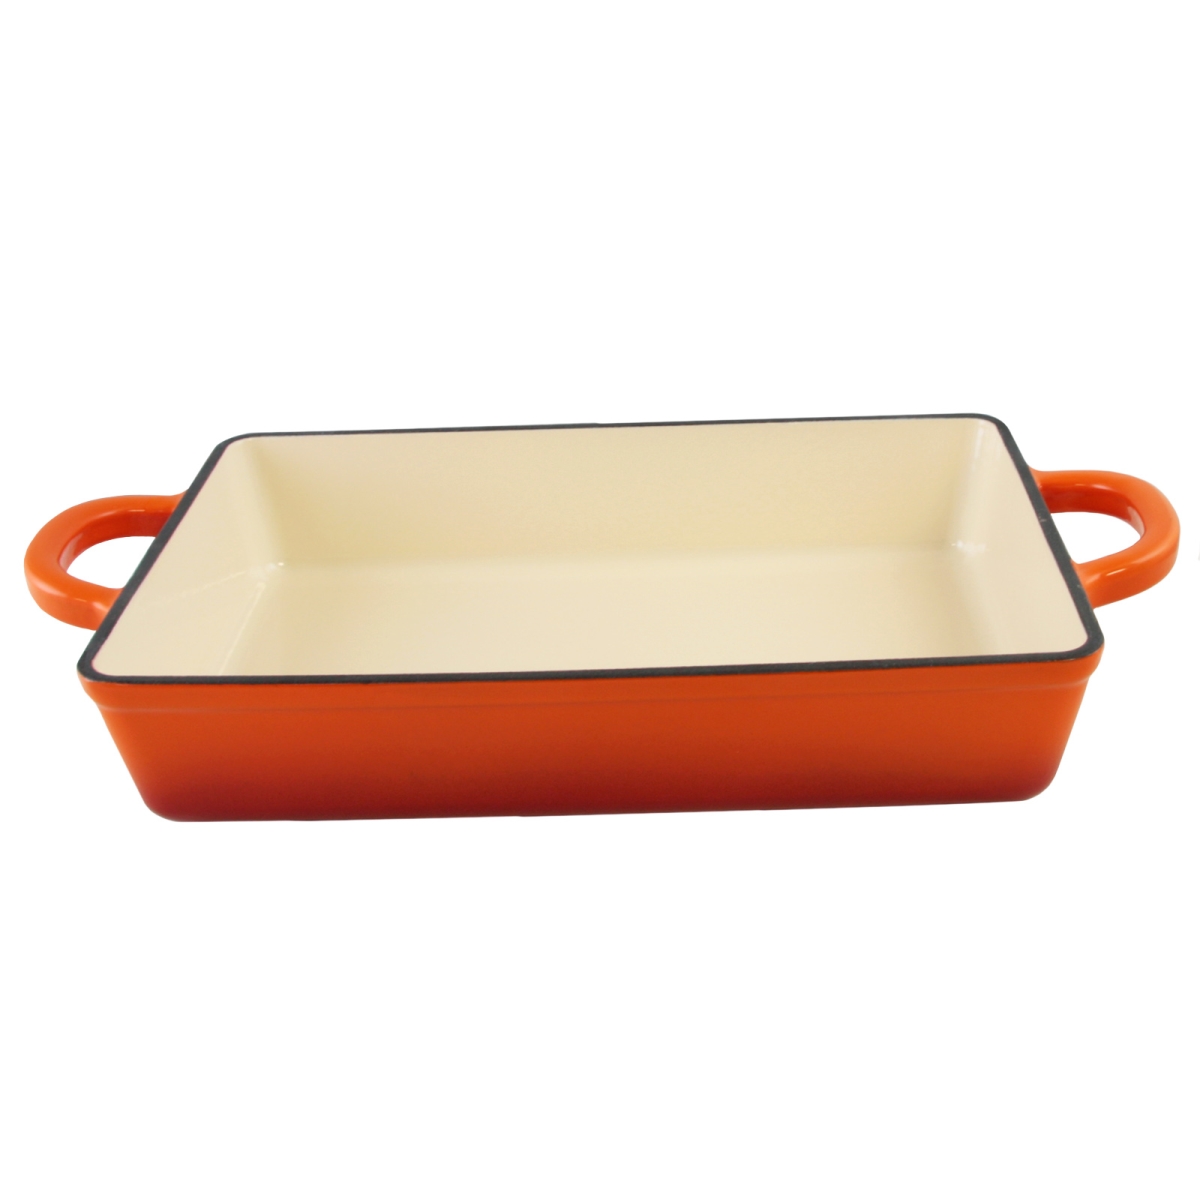 112009.01 13 In. Artisan Enameled Cast Iron Lasagna Pan, Sunset Orange